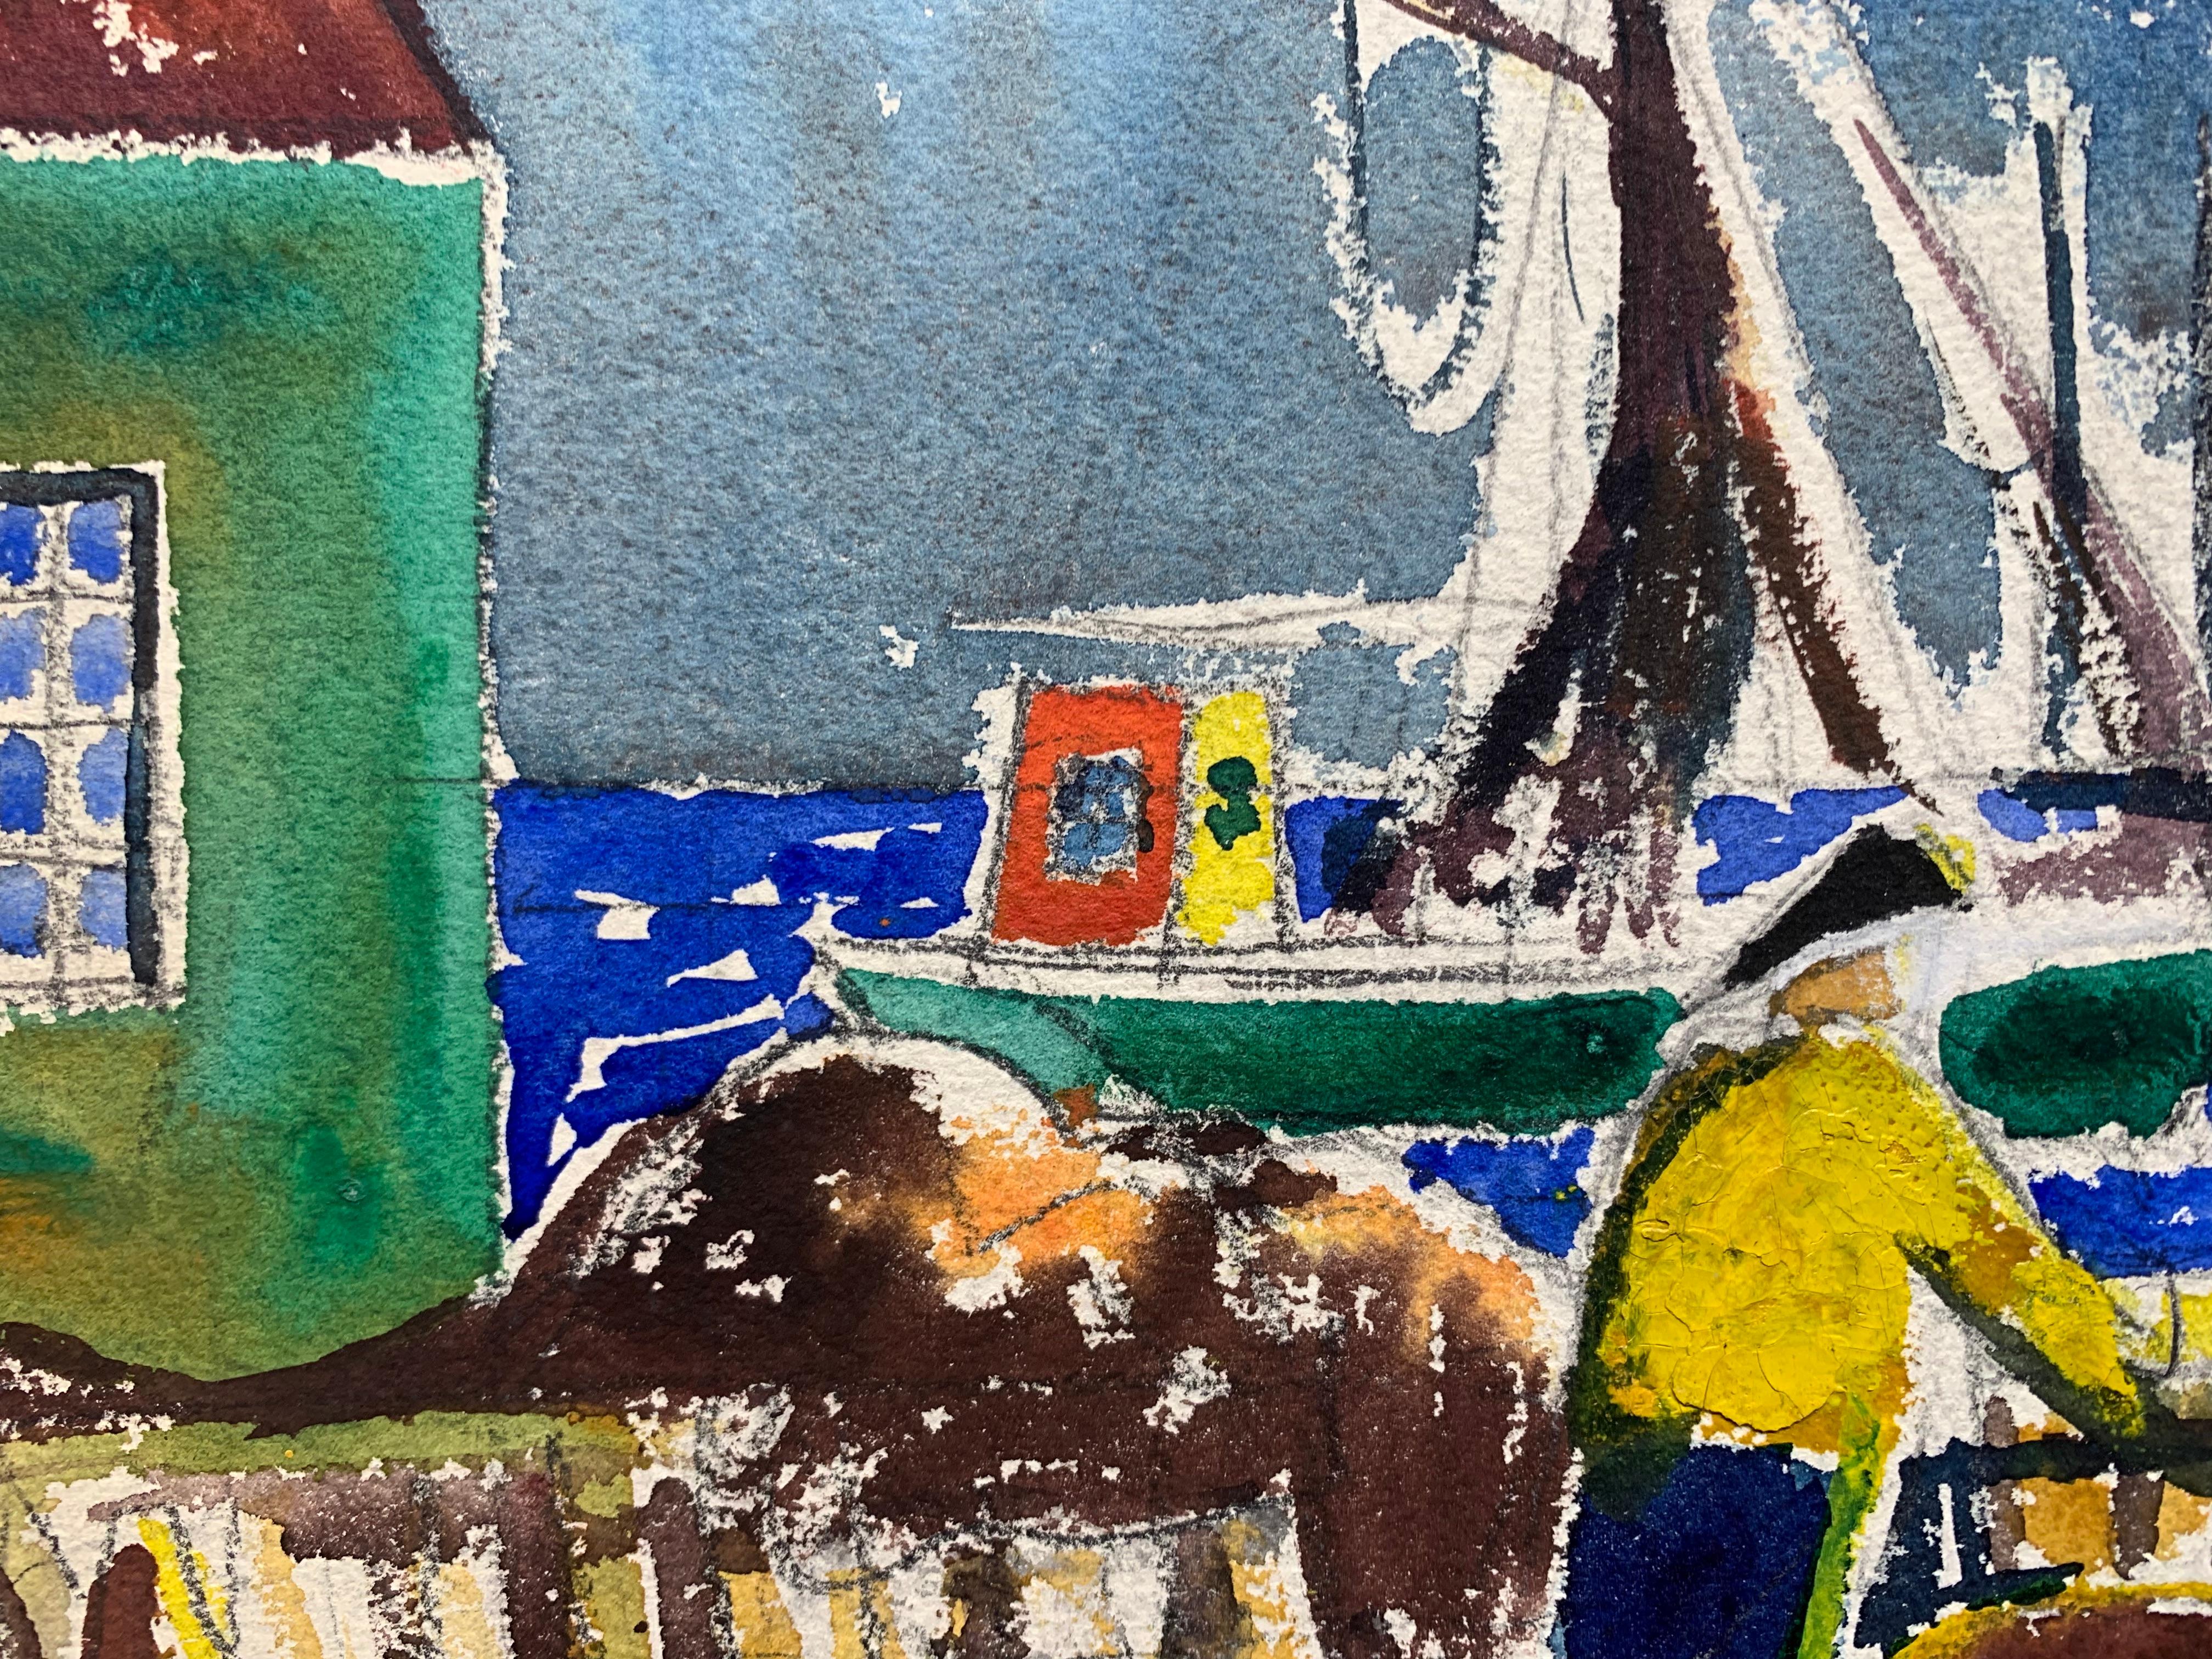 Belle peinture abstraite de l'artiste américain James Floyd Clymer (1893-1982). Docks, lever de soleil, ca.1930. L'aquarelle et le crayon sur papier mesurent 16 x 21 pouces. Signé dans la marge inférieure. 

Déchirure et zone de perte avec trou dans